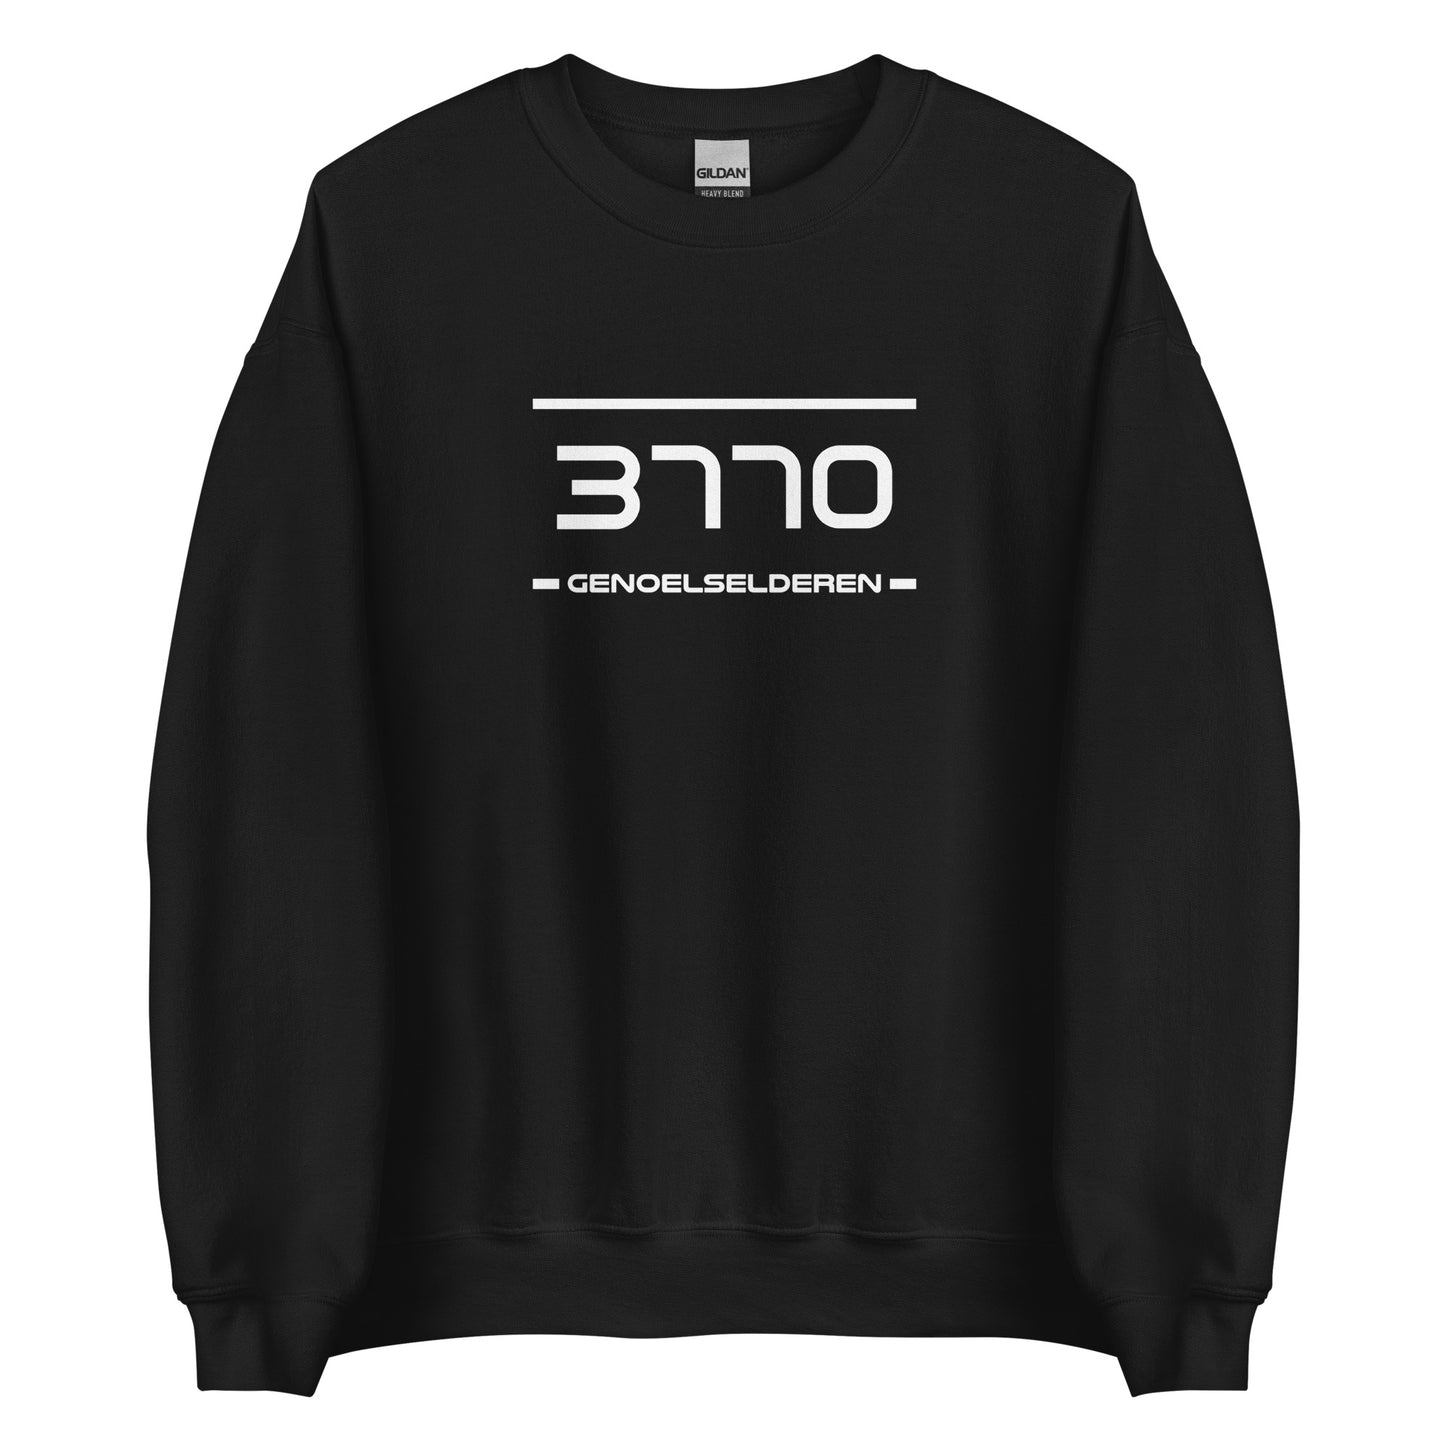 Sweater - 3770 - Genoelselderen (M/V)